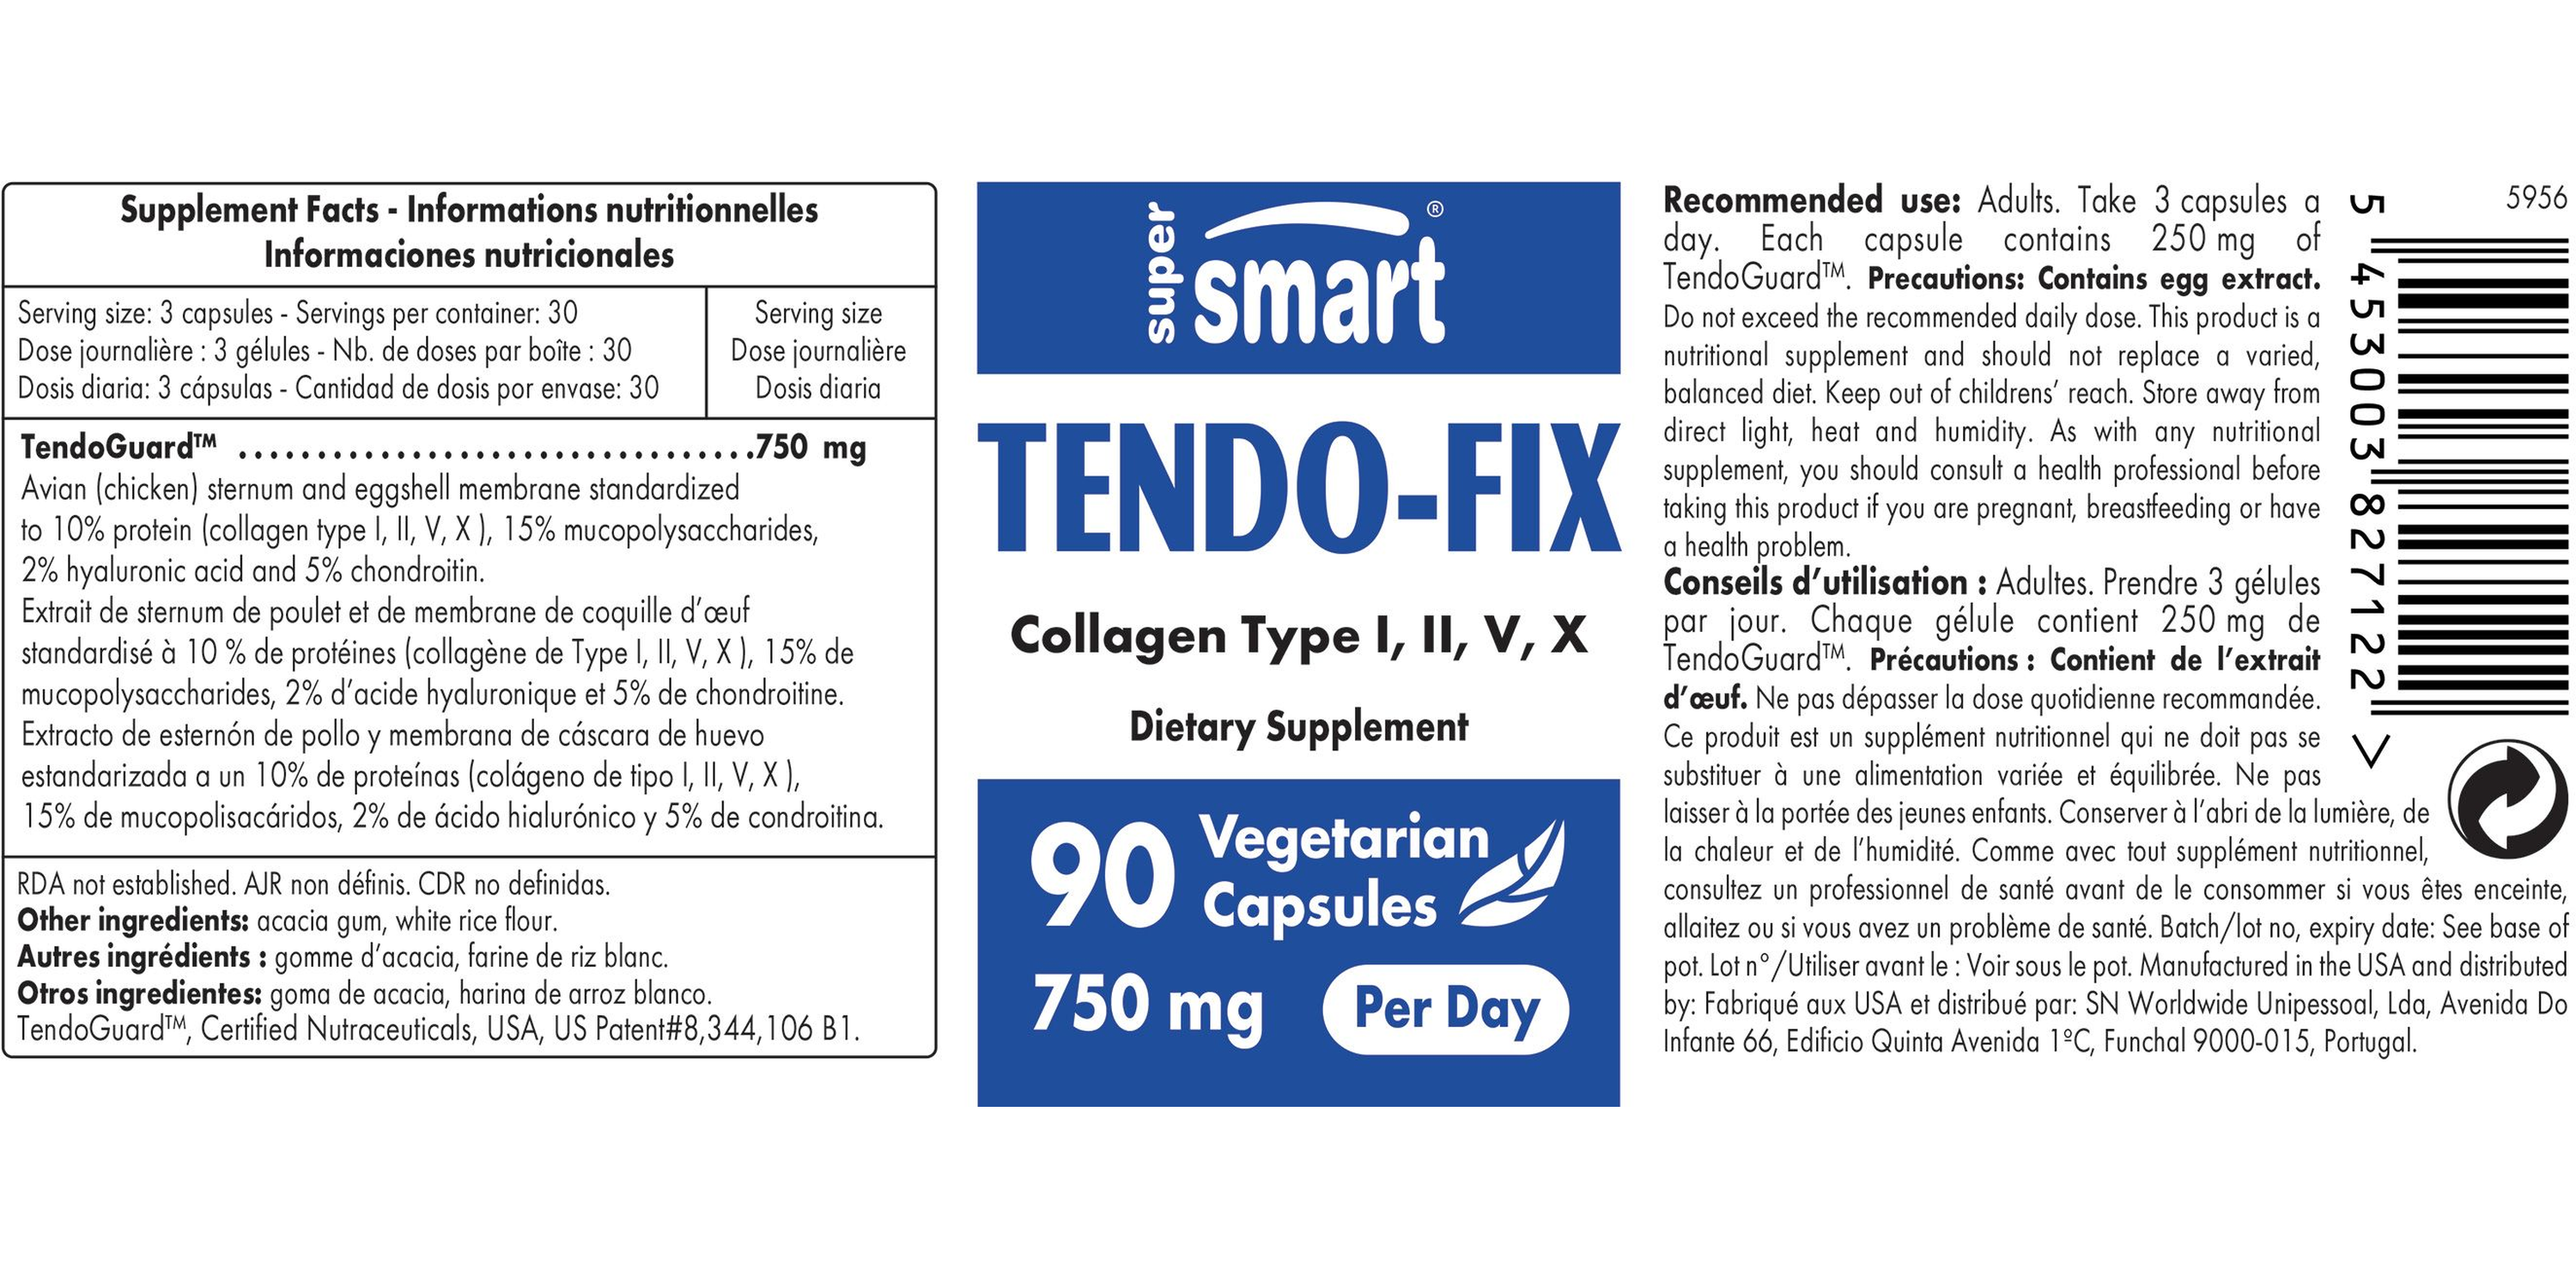 Tendo-Fix Supplement